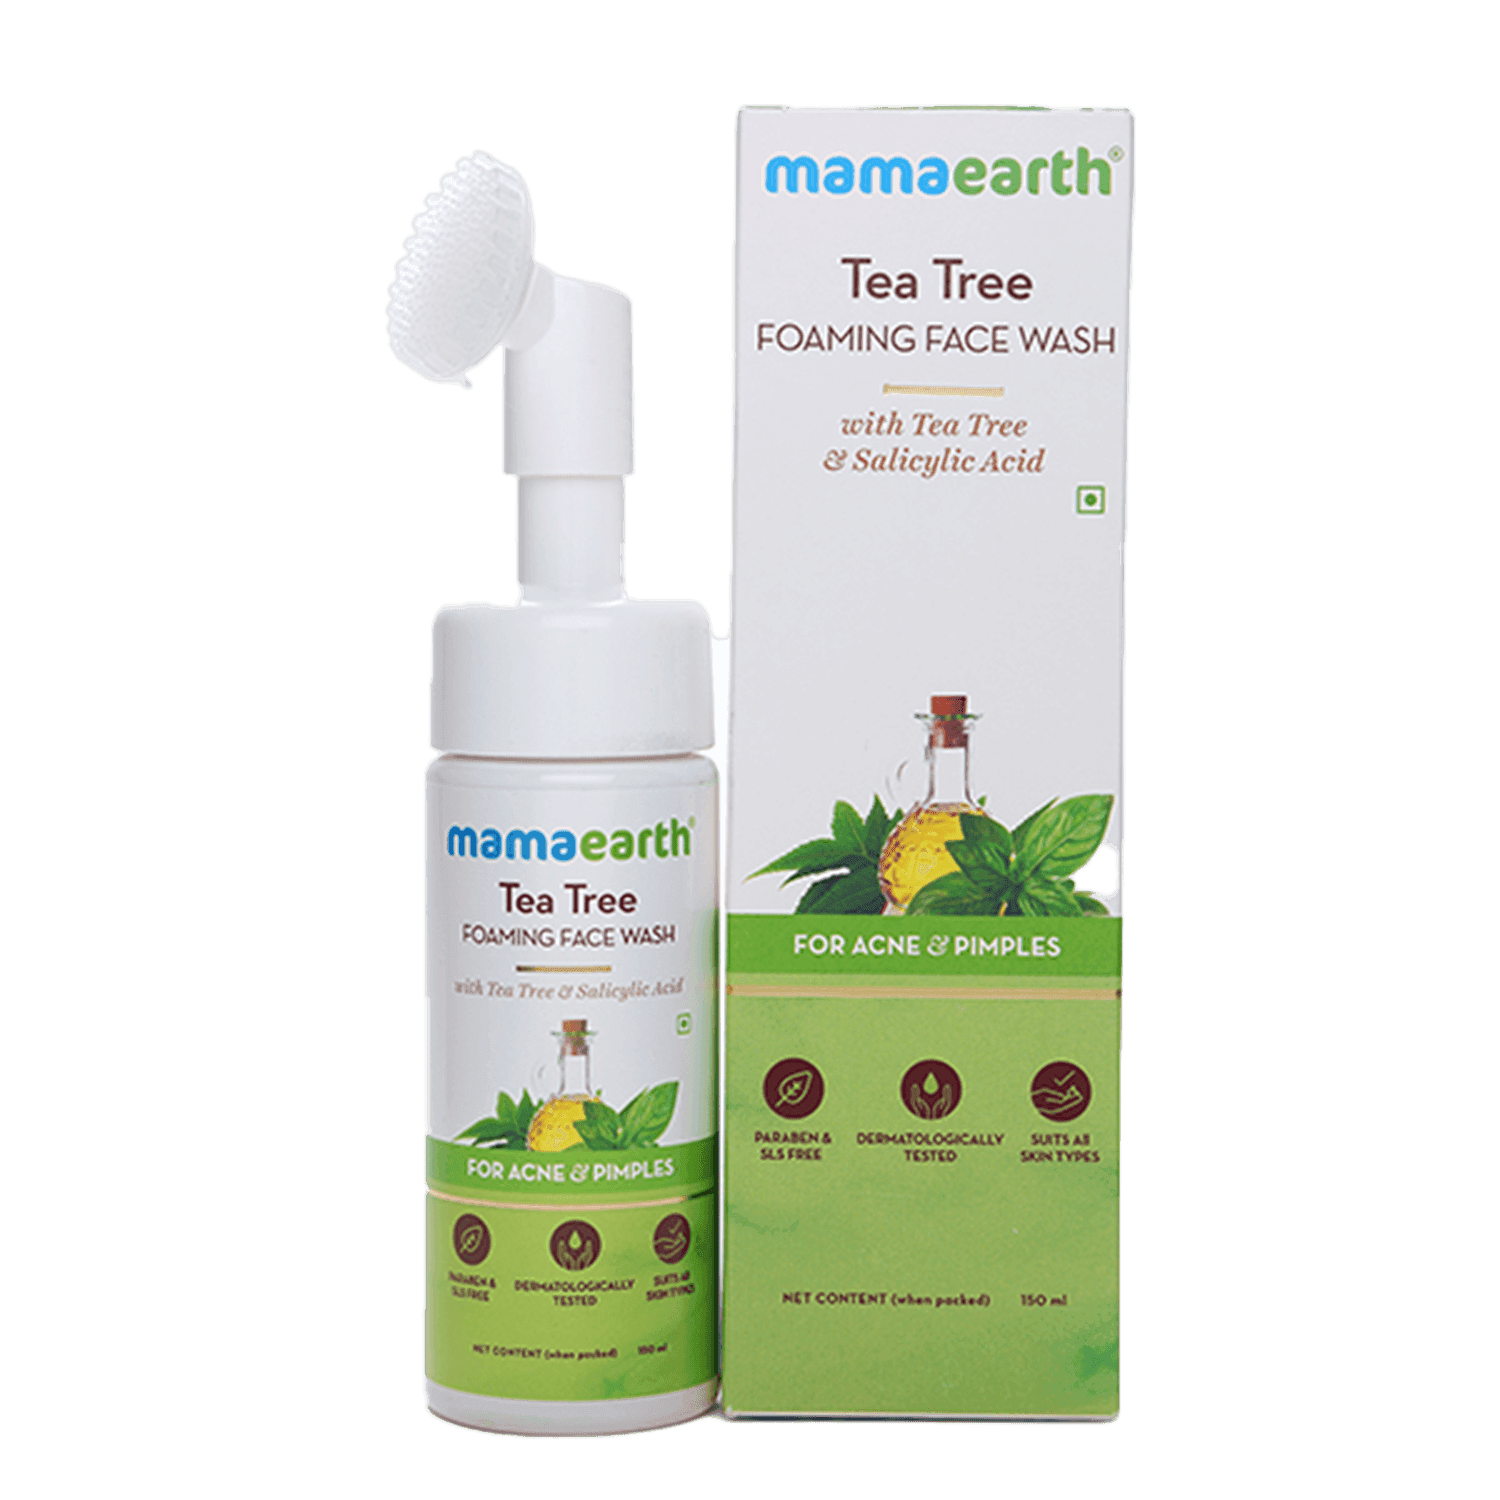 mamaearth tea tree foaming face wash (150ml)